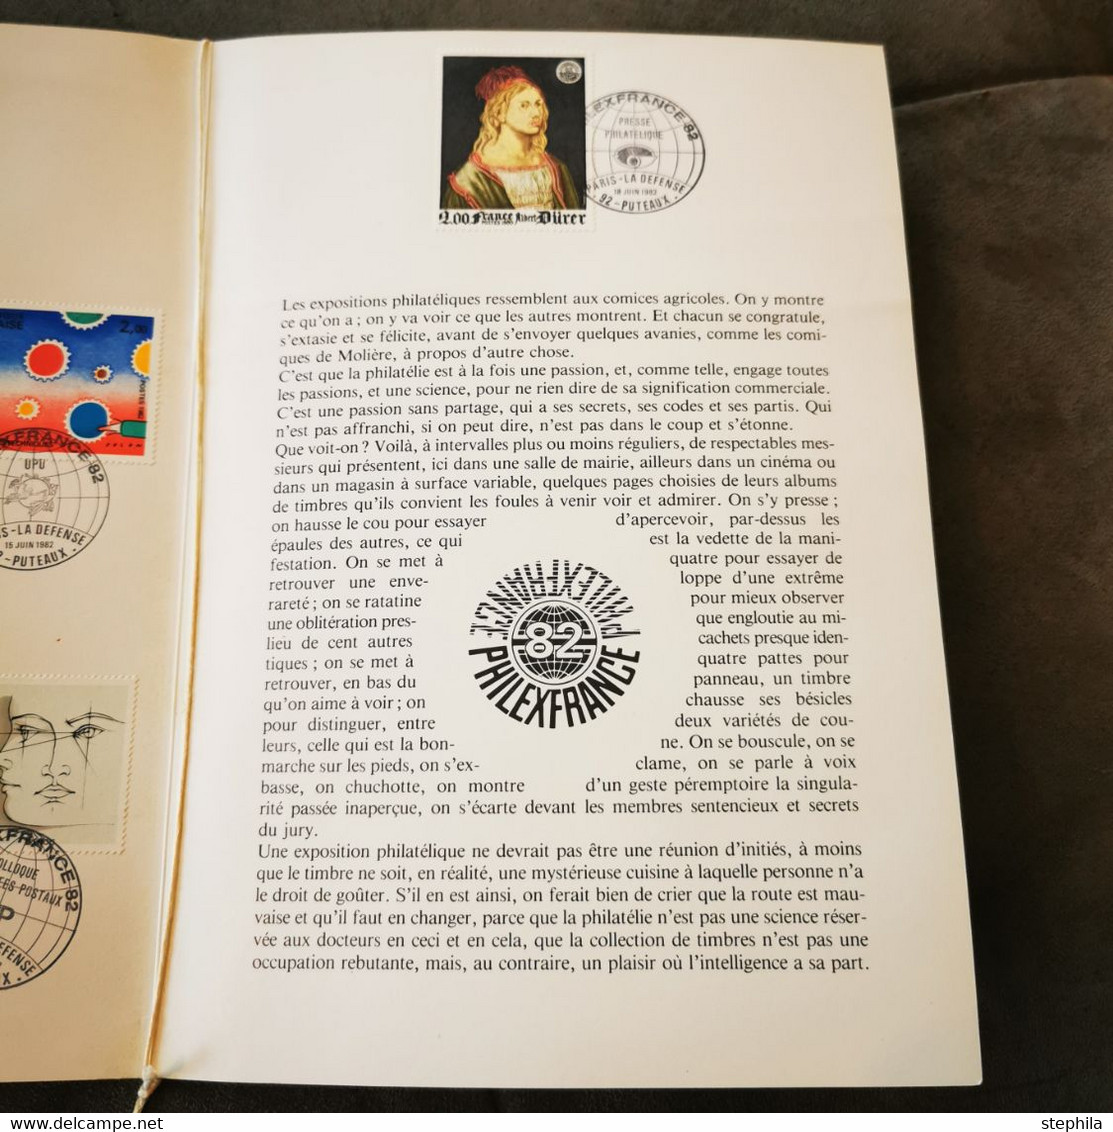 RARE ! ⭐ France FDC Encart LUXE PHILEXFRANCE 1982 Paris 1er Jour - Collection Timbre Poste ⭐ - 1980-1989